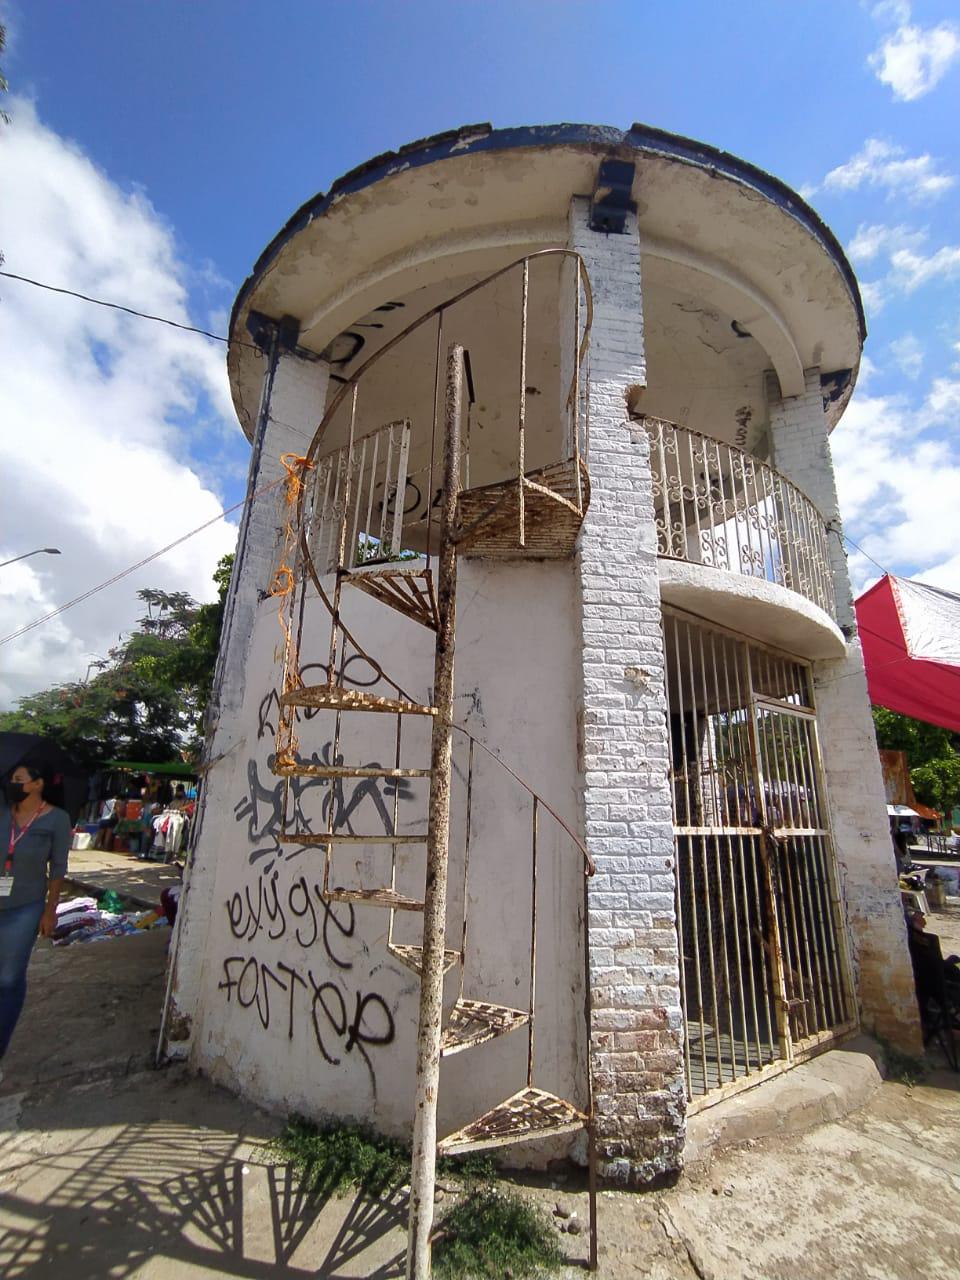 $!Piden remodelación de la plazuela Flores Magón en Mazatlán por desperfectos